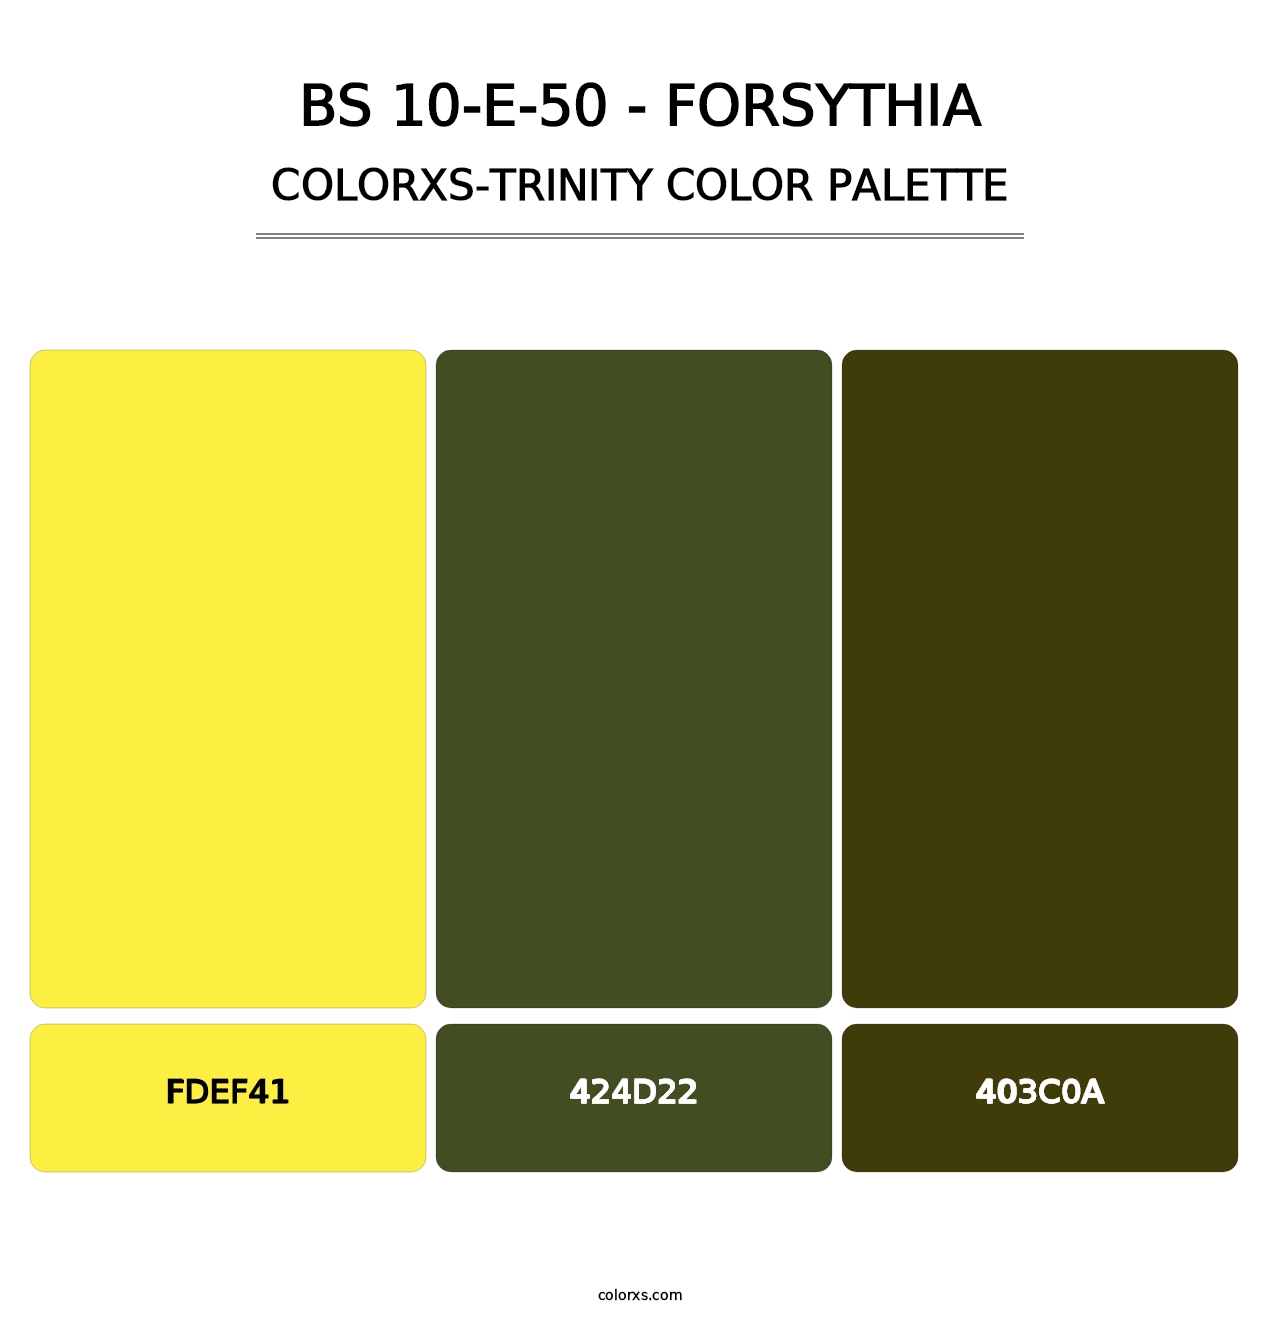 BS 10-E-50 - Forsythia - Colorxs Trinity Palette